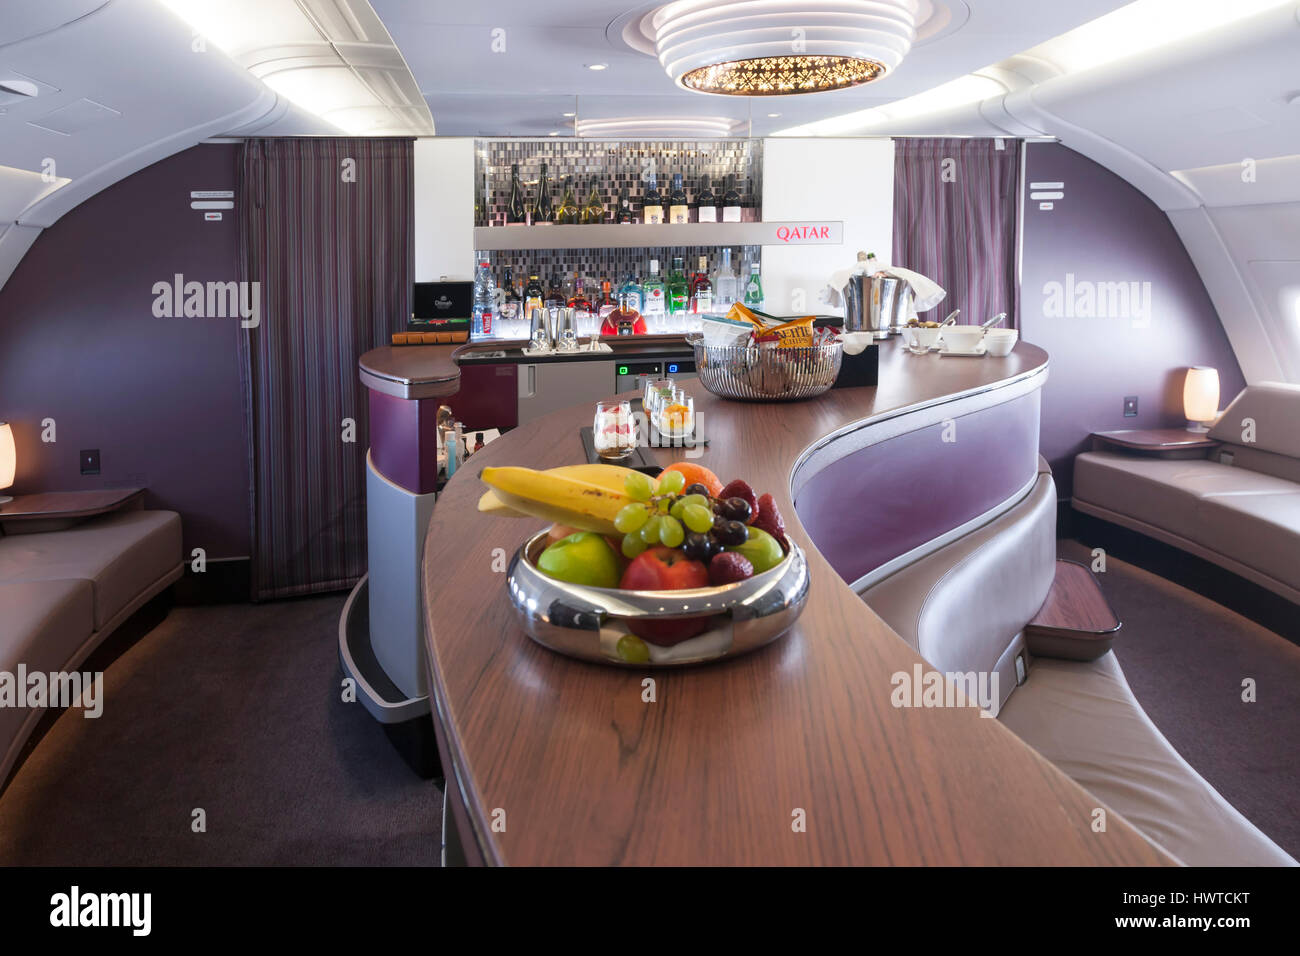 Qatar Airways salon classe affaires, à bord d'Airbus A380-800. Banque D'Images